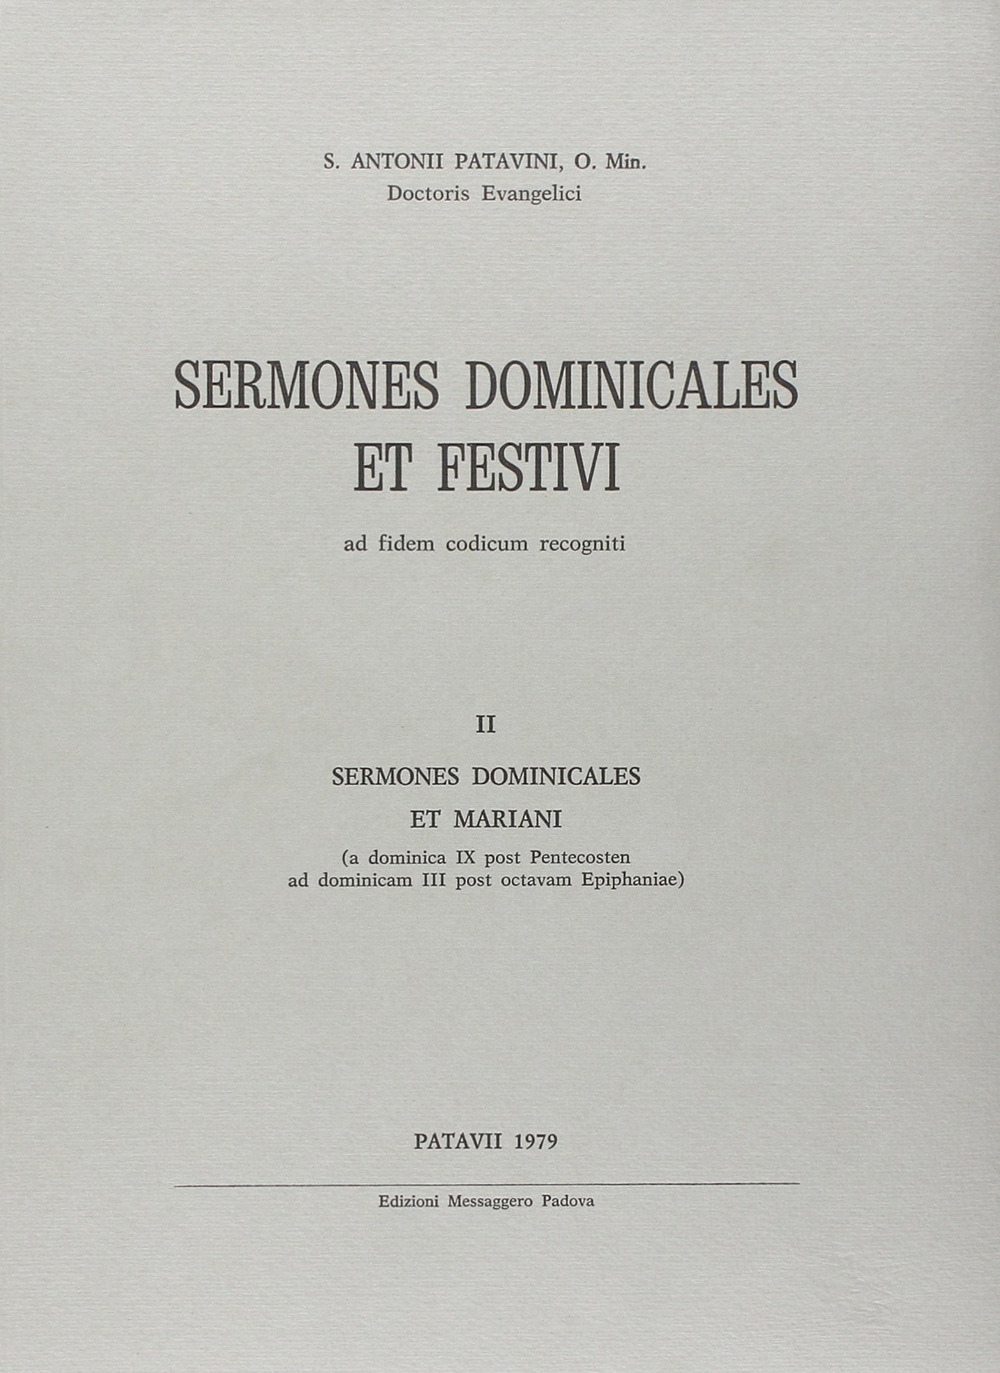 Sermones dominicales et festivi. Vol. 2: Sermones dominicales et mariani